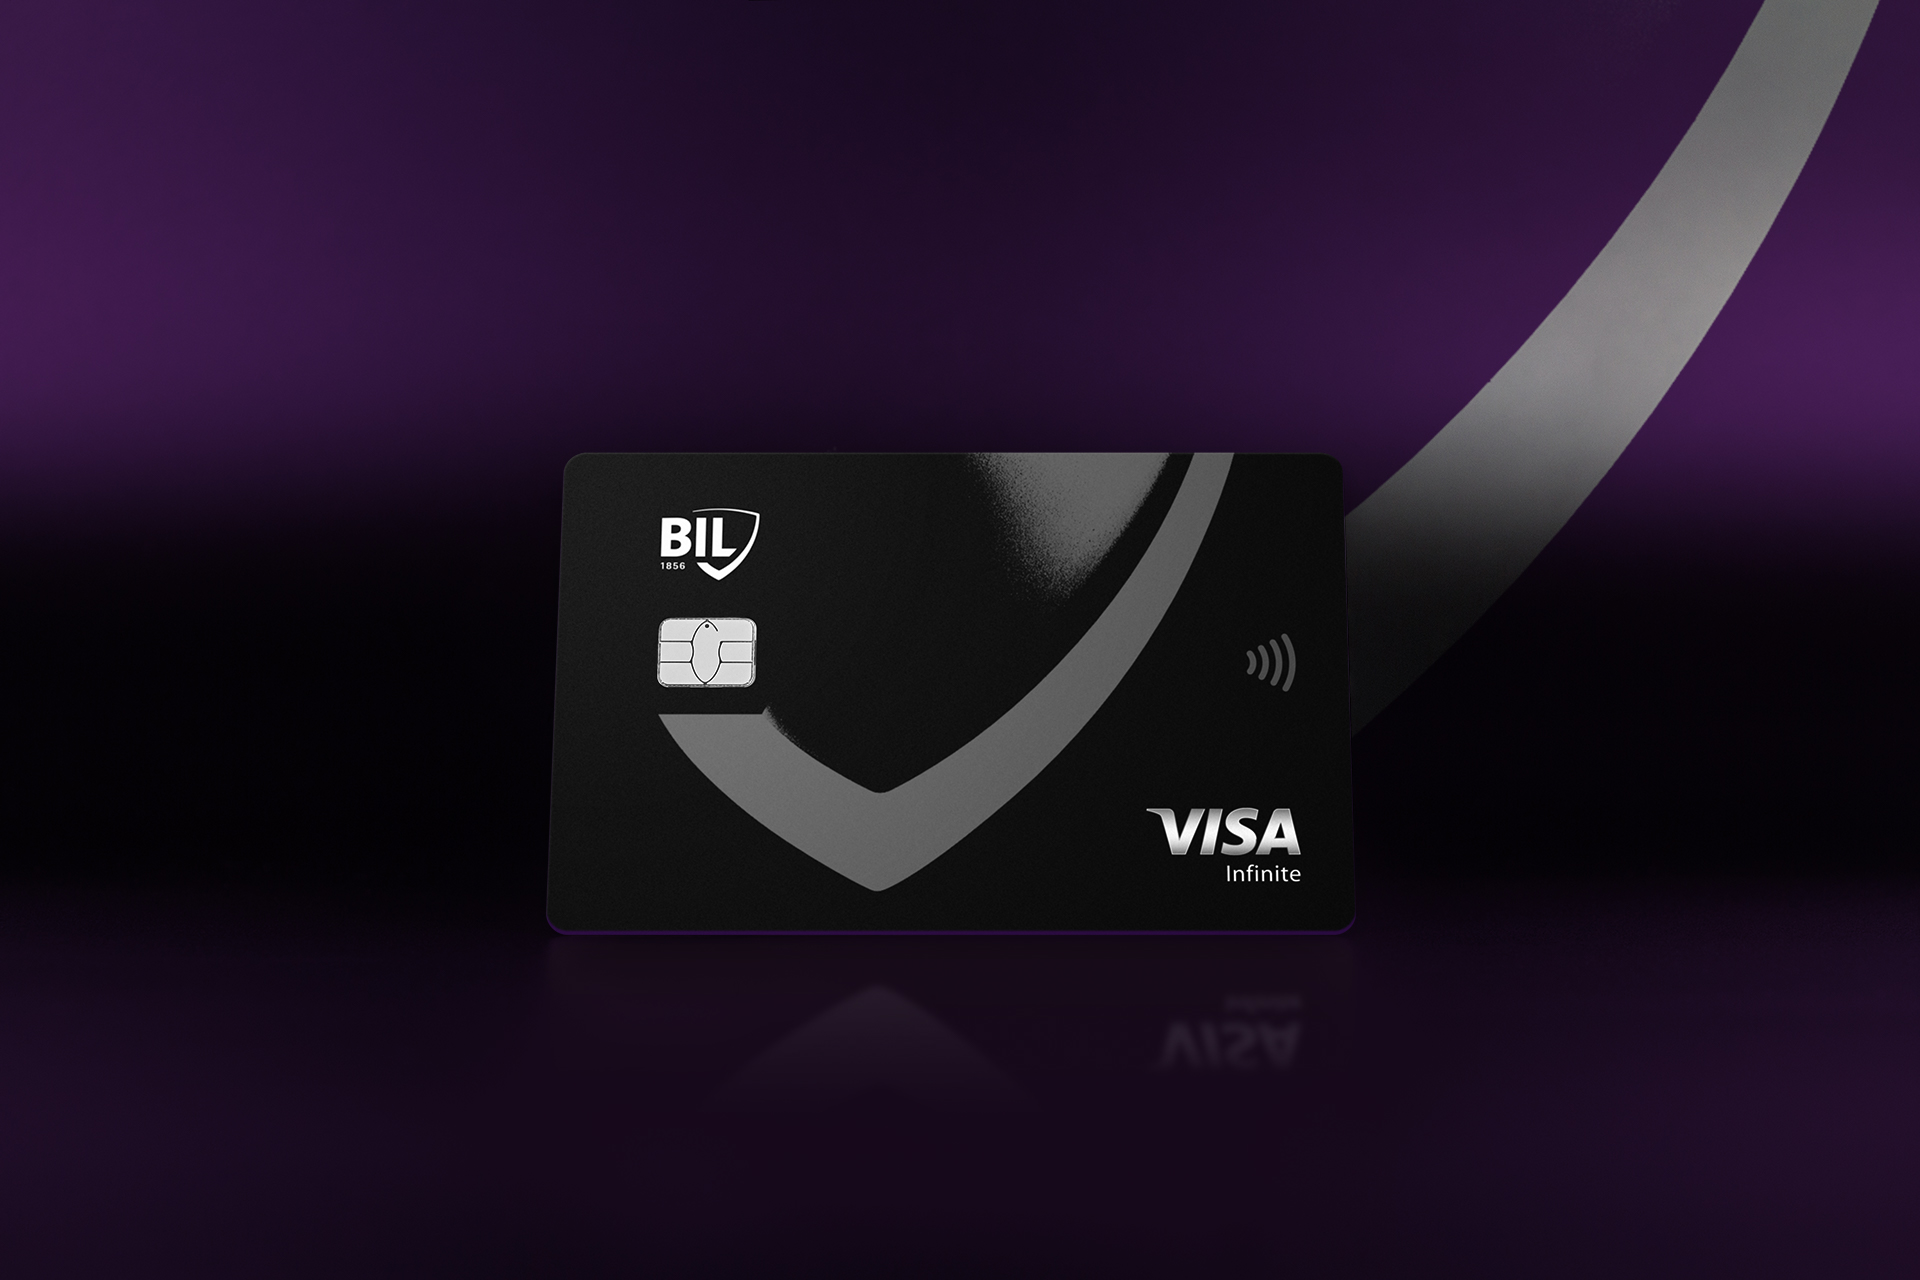 Vue de la carte Visa Infinite émise par la BIL. Elle est noire et de format horizontal, avec le motif décliné du logo écusson, en gris.